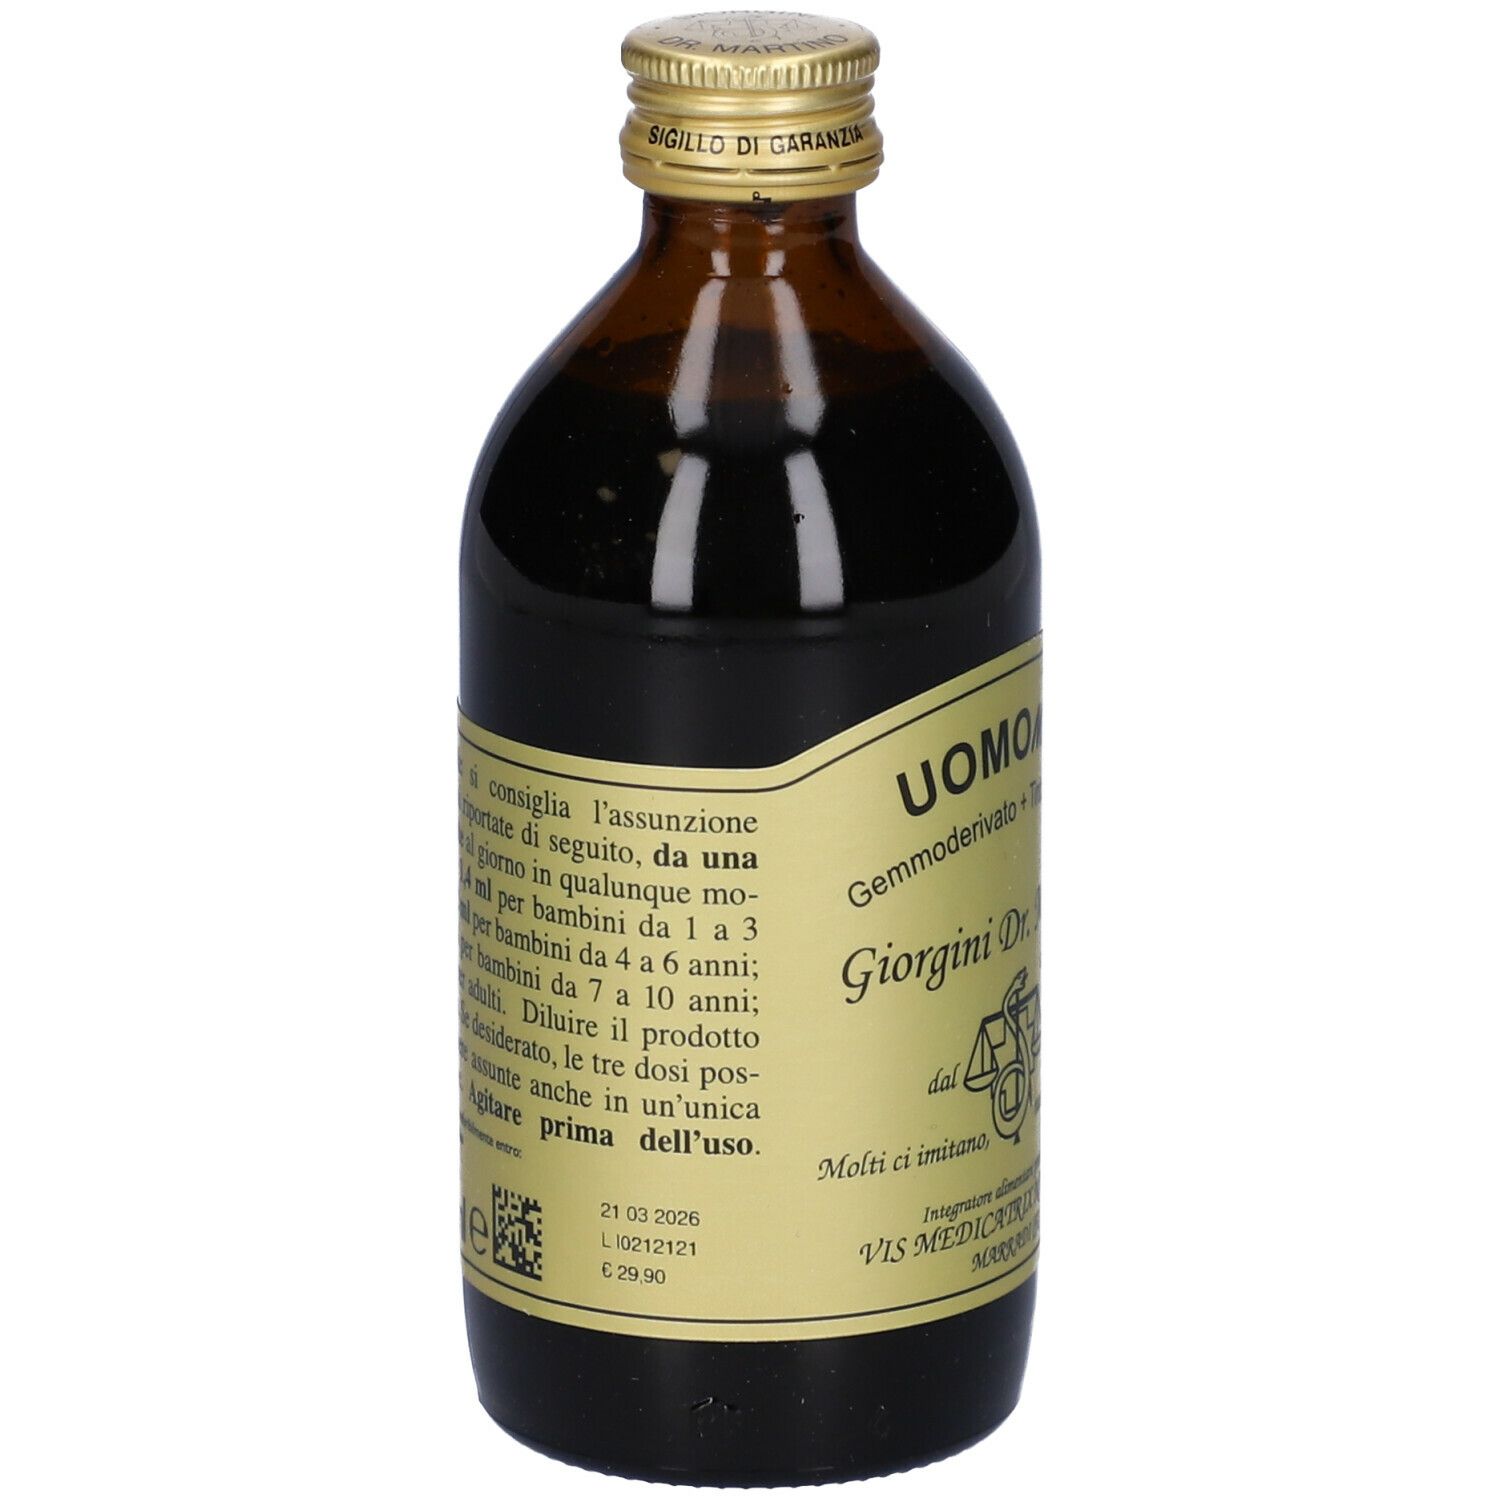 Uomomix Gd+Tm S/Alcool 200Ml